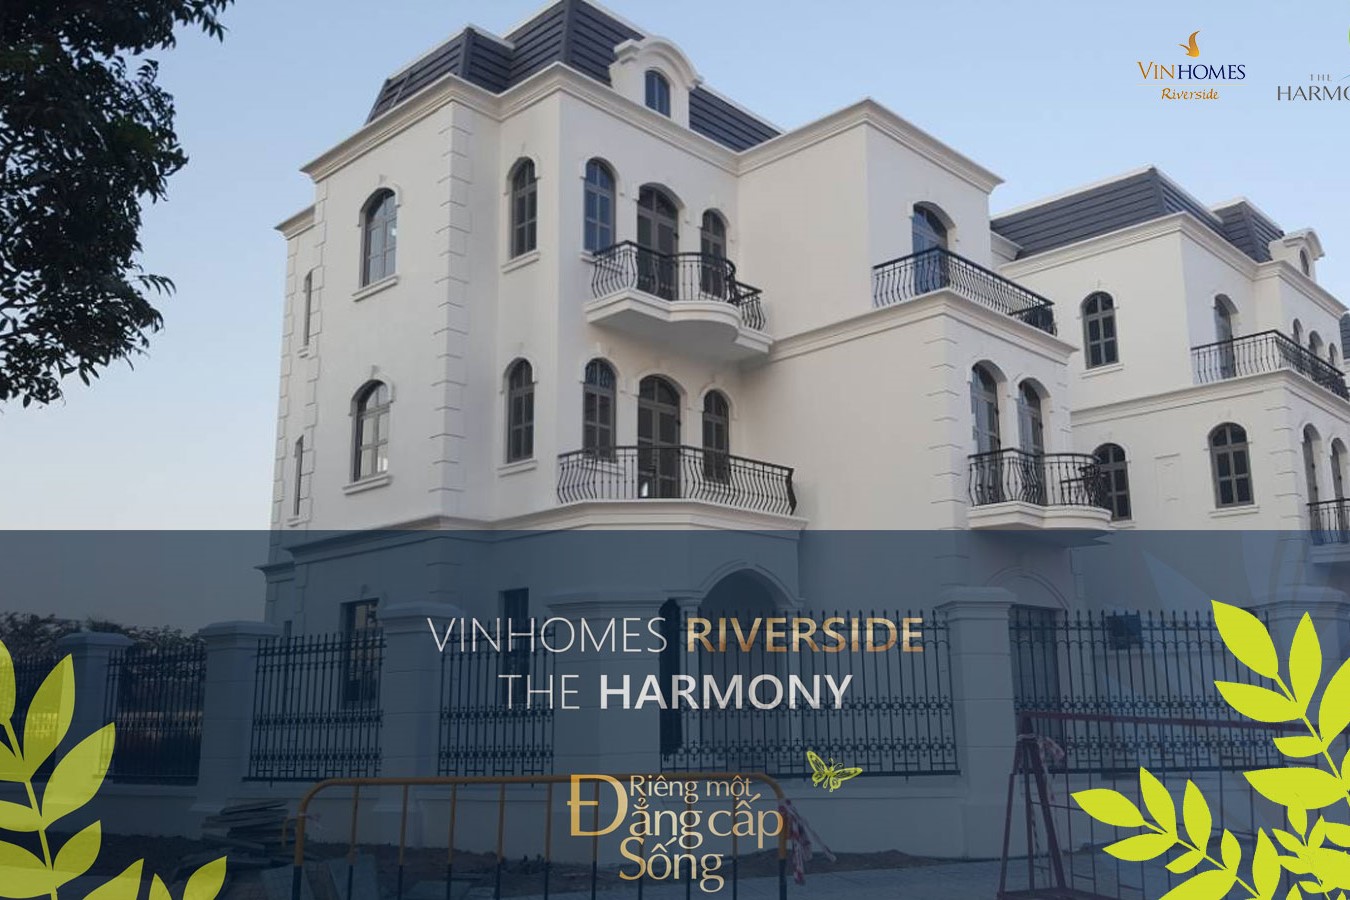 Biệt thự Vinhomes Riverside - công trình có trái tim